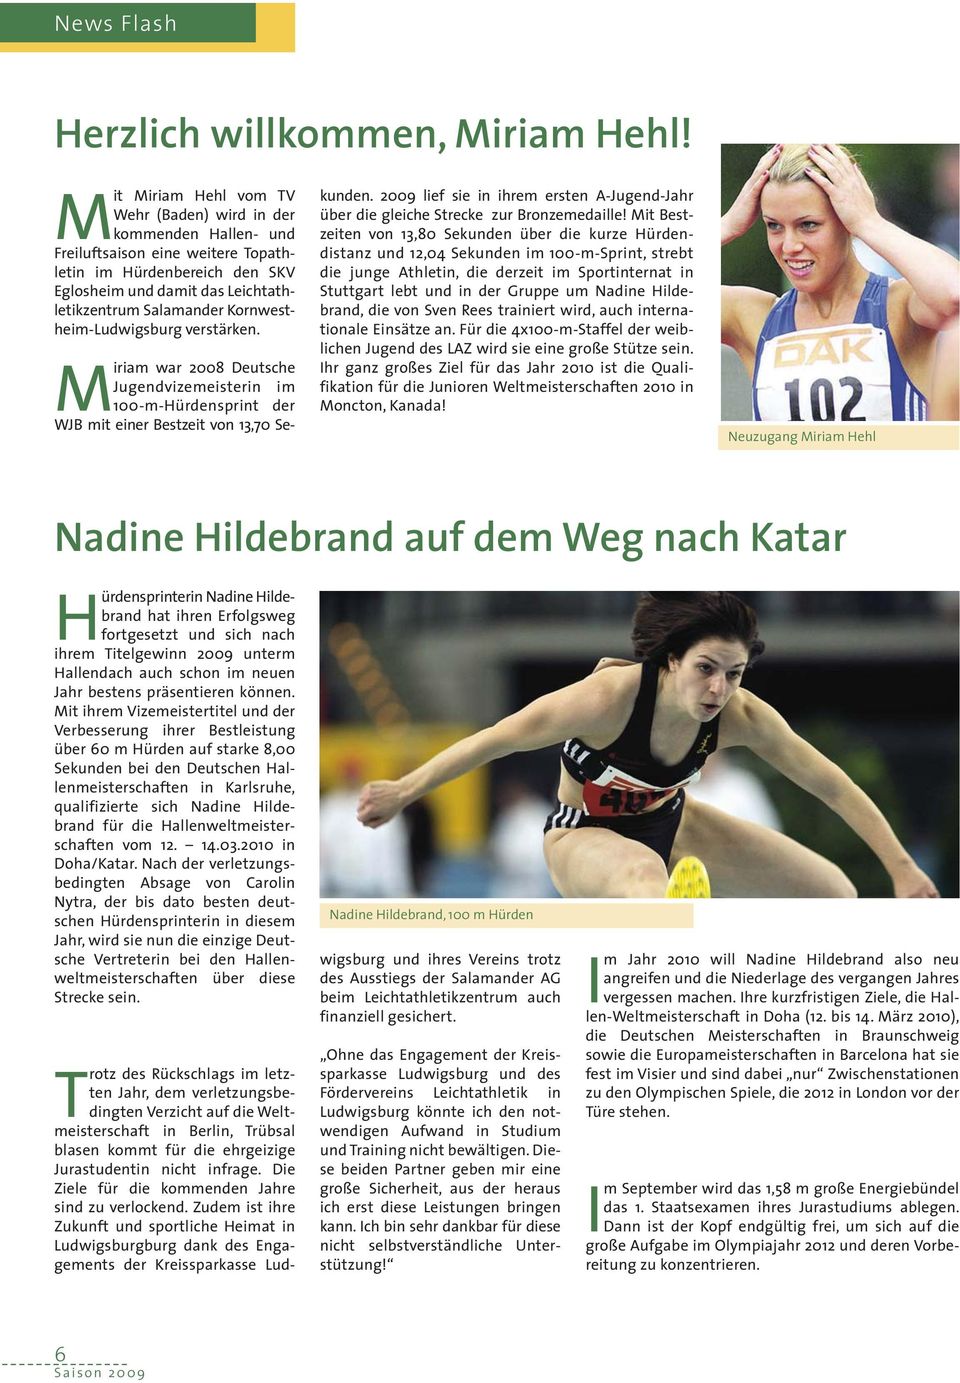 Kornwestheim-Ludwigsburg verstärken. Miriam war 2008 Deutsche Jugendvizemeisterin im 100-m-Hürdensprint der WJB mit einer Bestzeit von 13,70 Se- kunden.